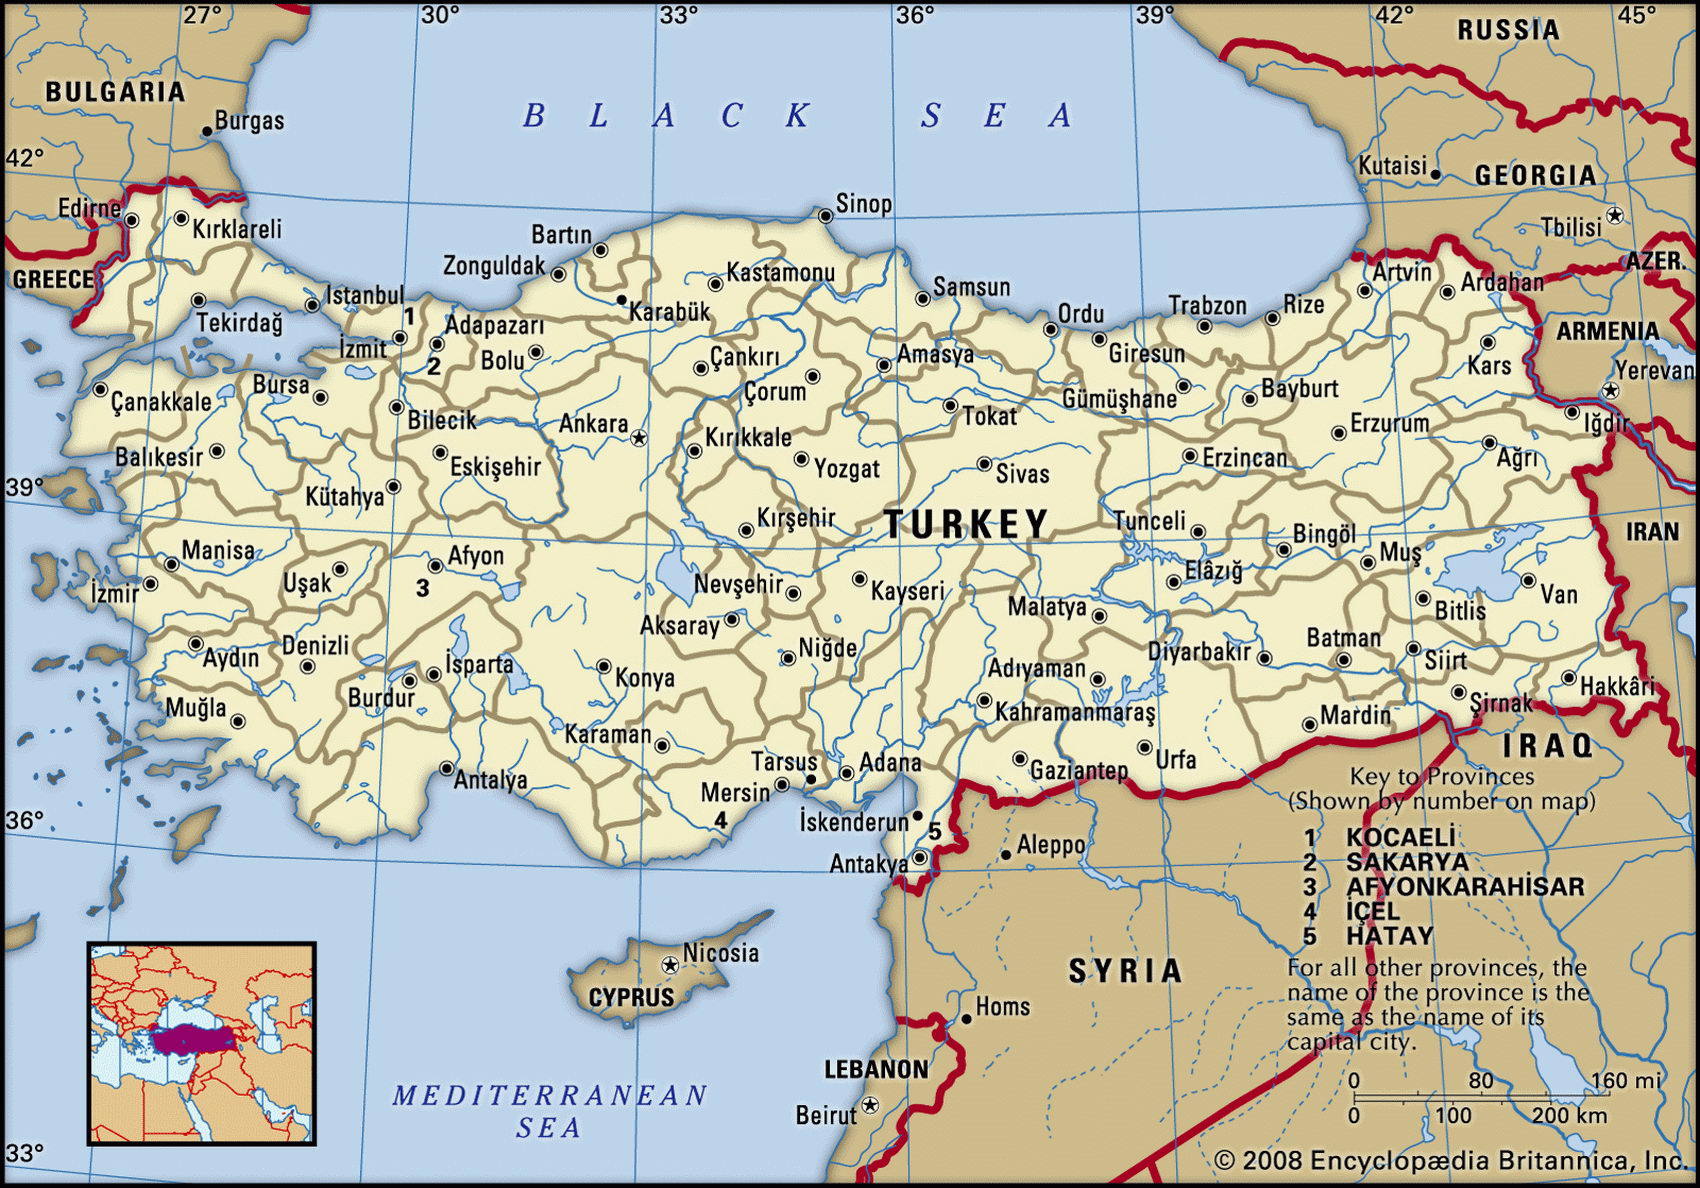 https://map-rus.com/atlas/images/Turkey.jpg